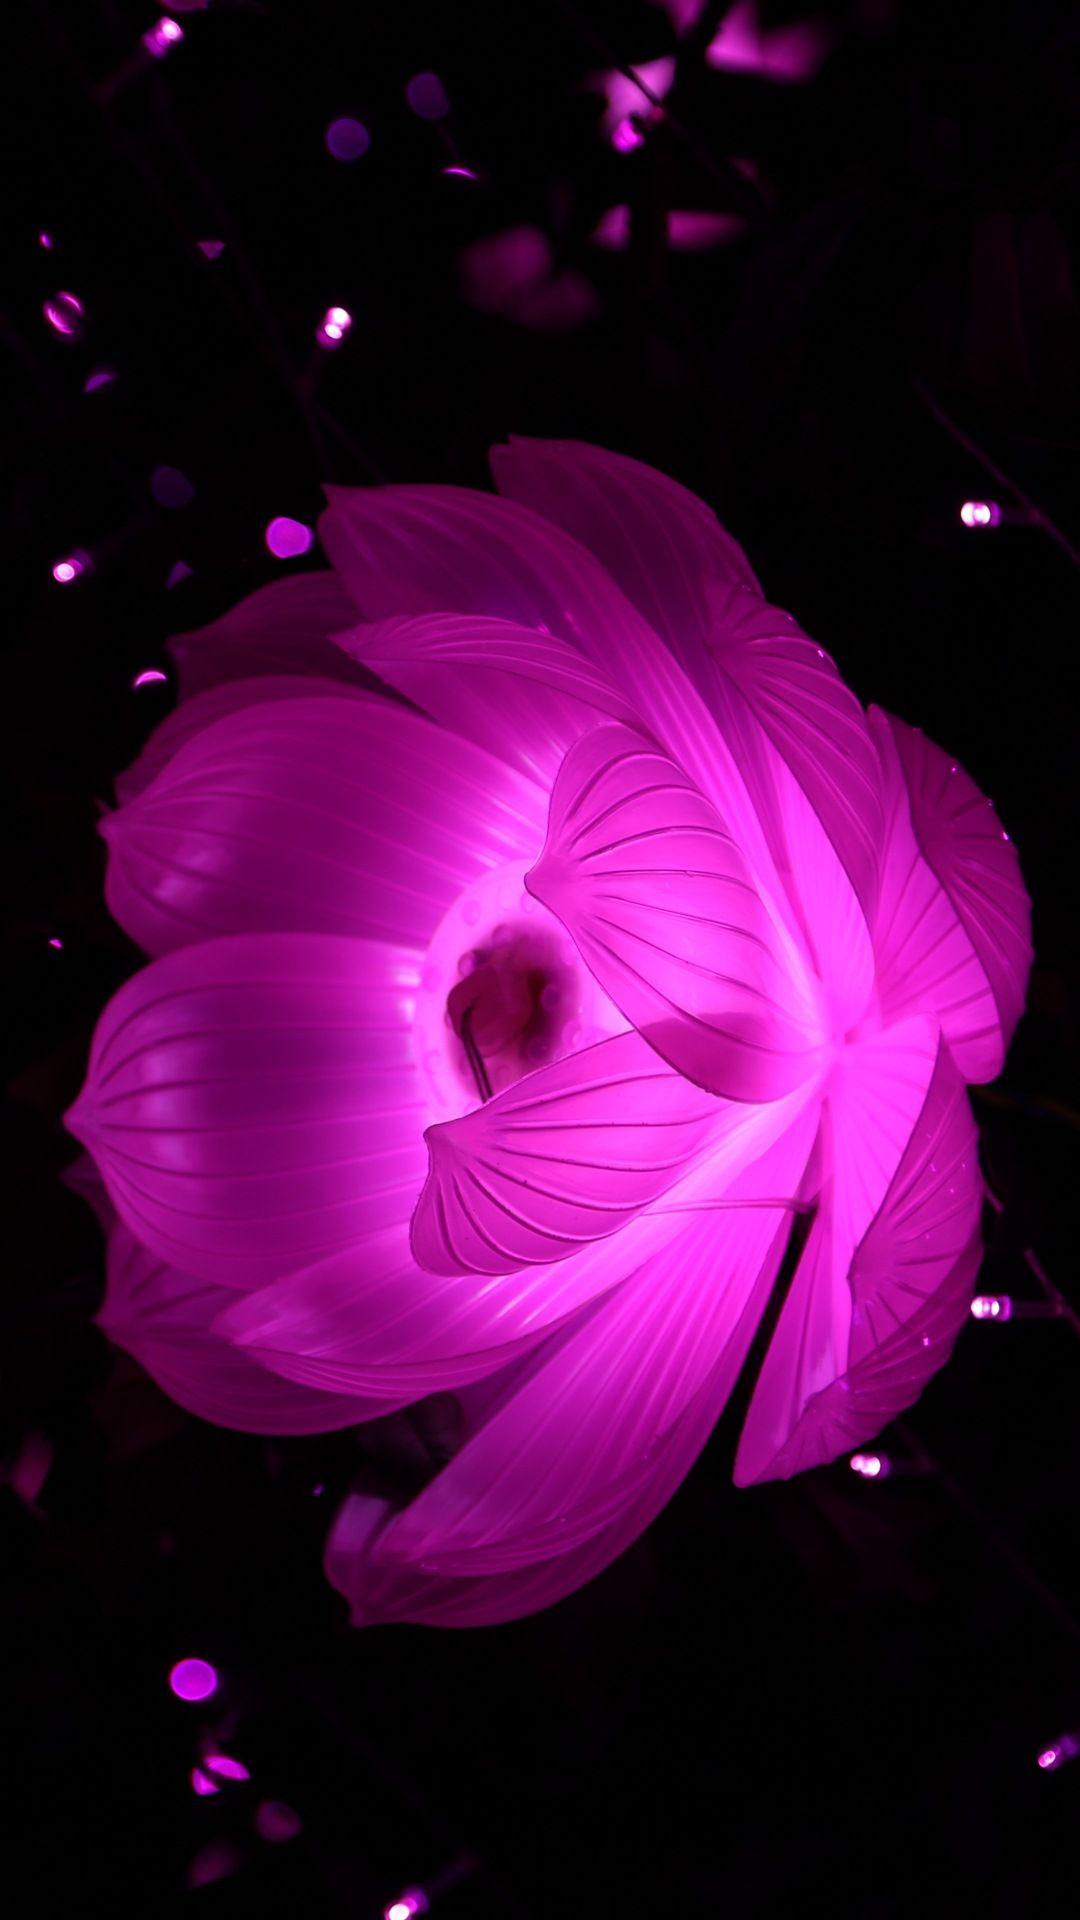 1080x1920 Dark Flower Wallpaper iPhone - Pink Flower Black Background iPhone